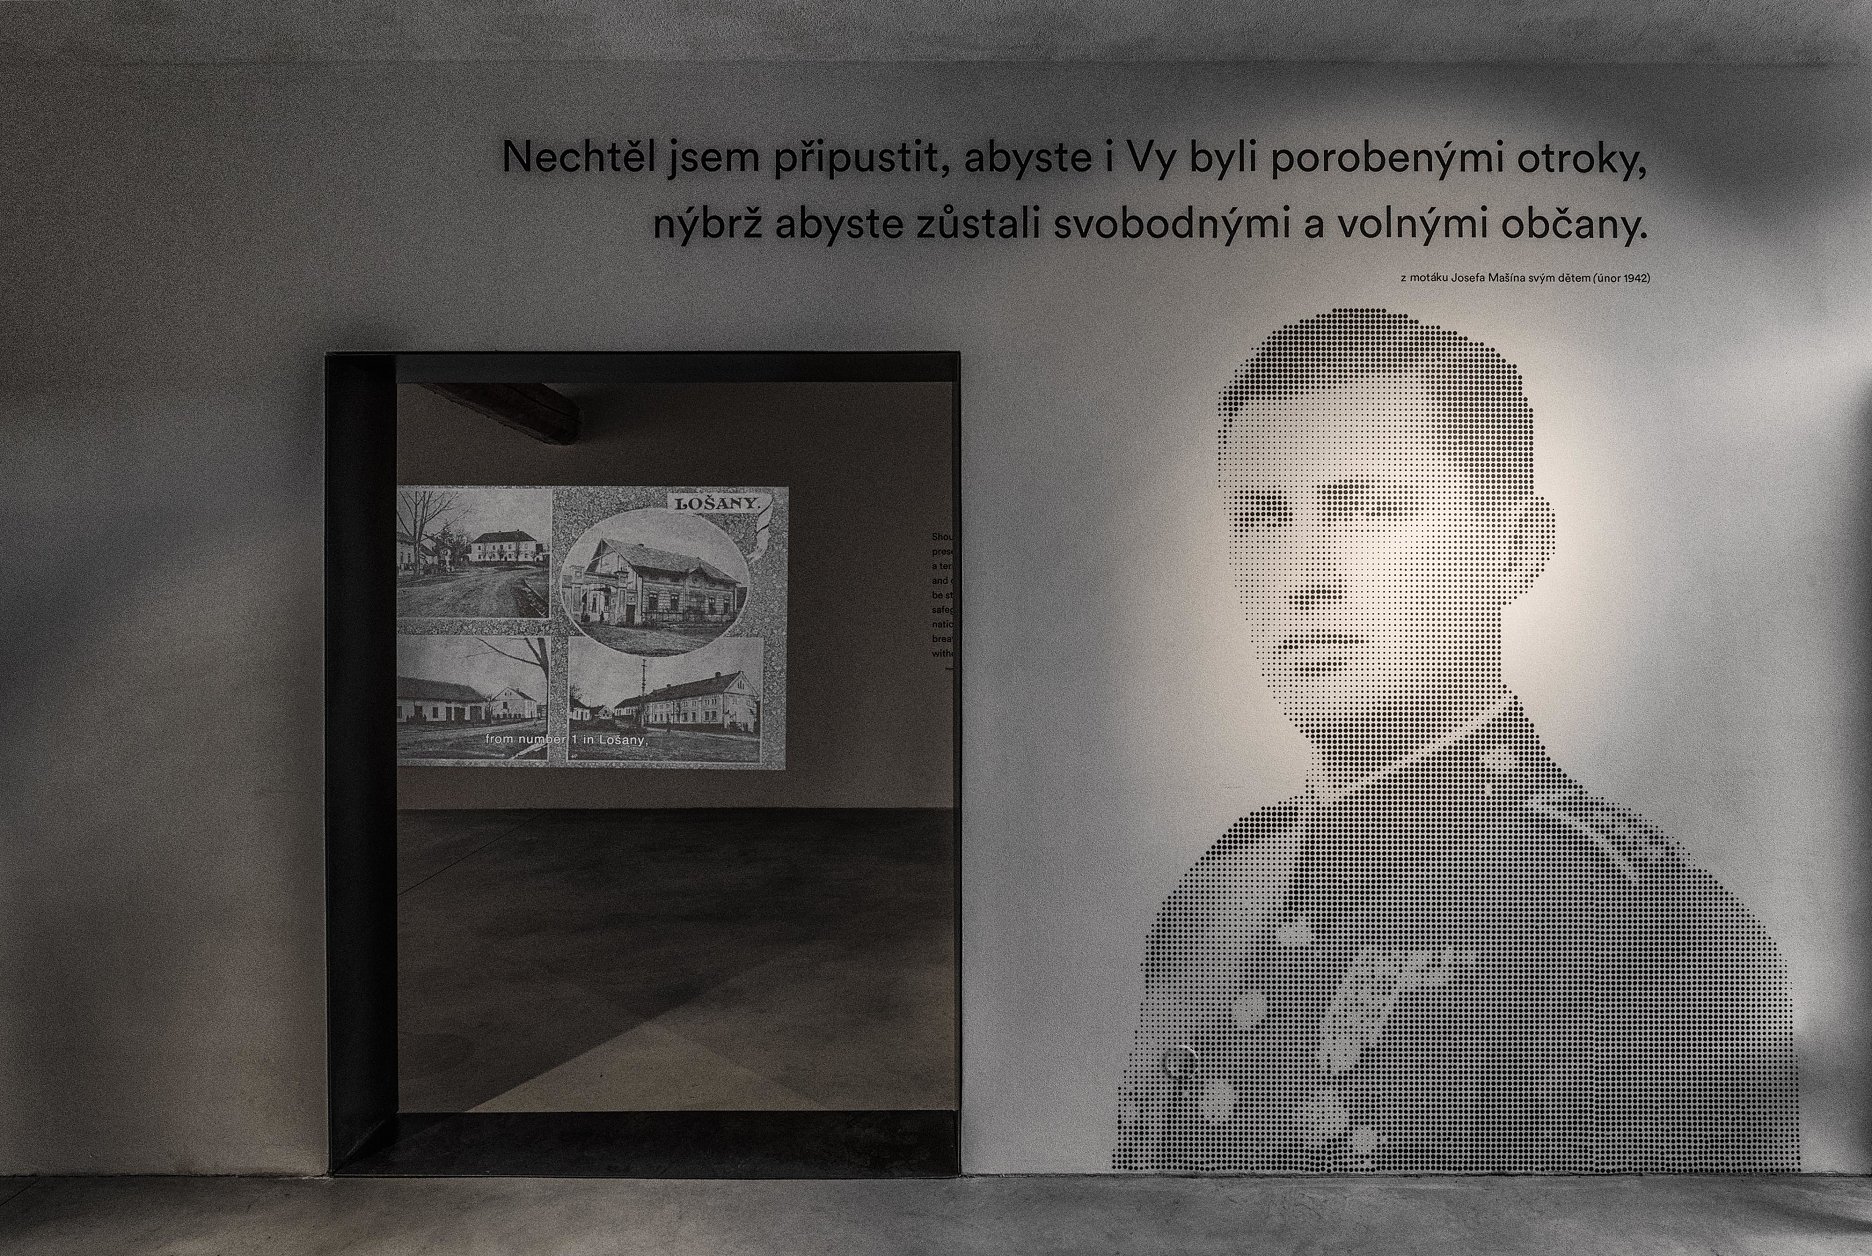 Predsieni expozície dominuje portrét Josefa Mašína